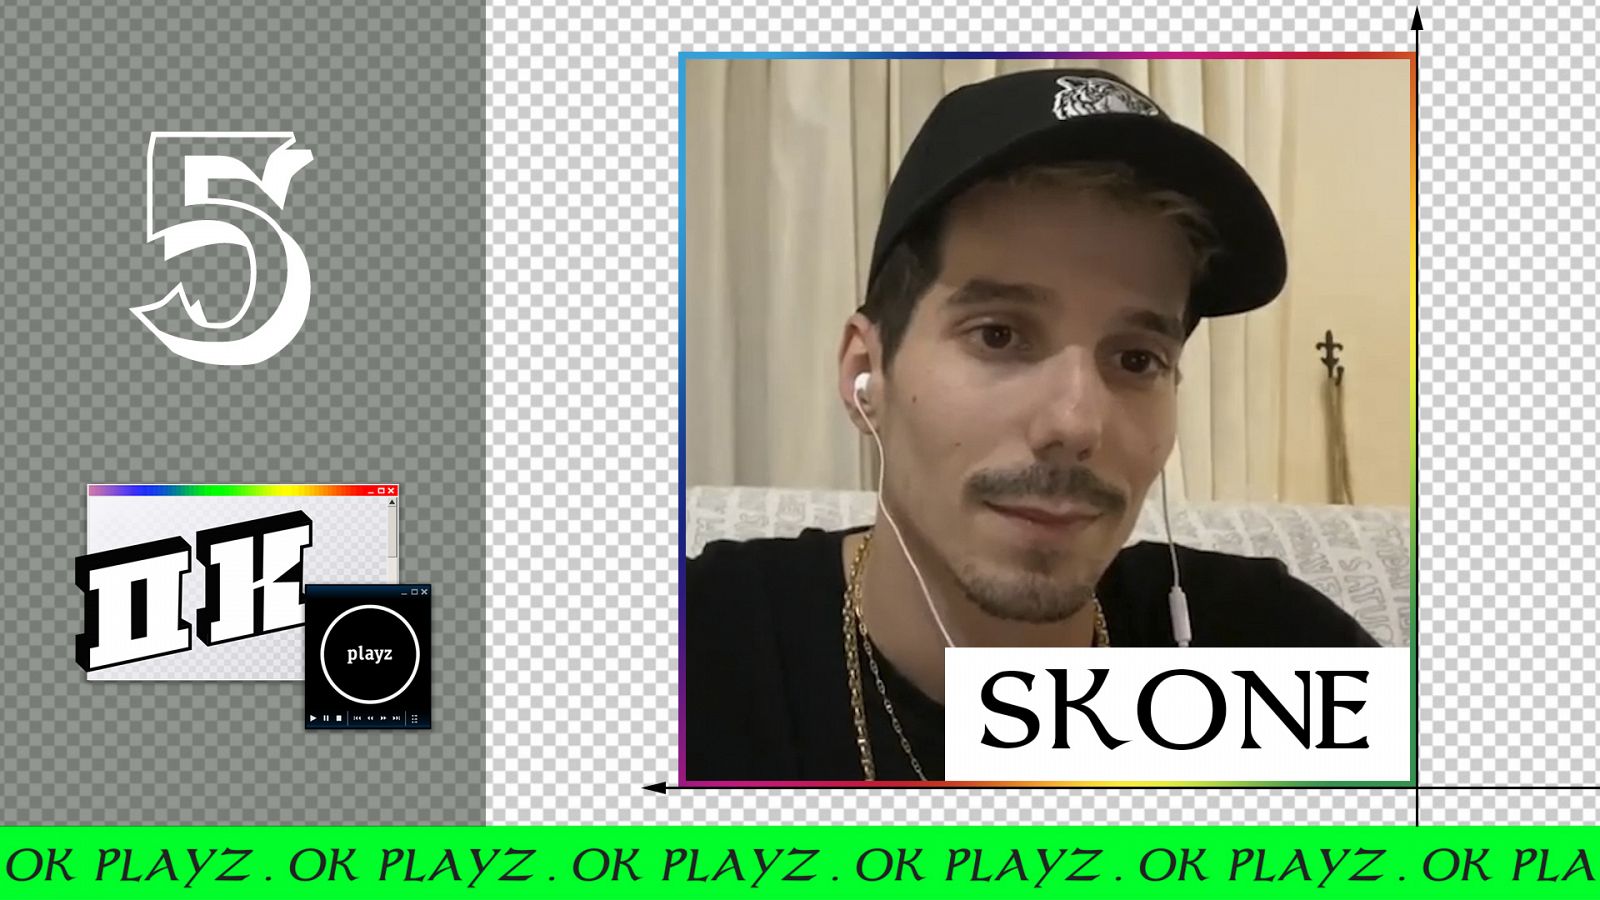 Ok Playz - Skone: "Si yo fuera como es realmente Skone, sería una persona de mierda"